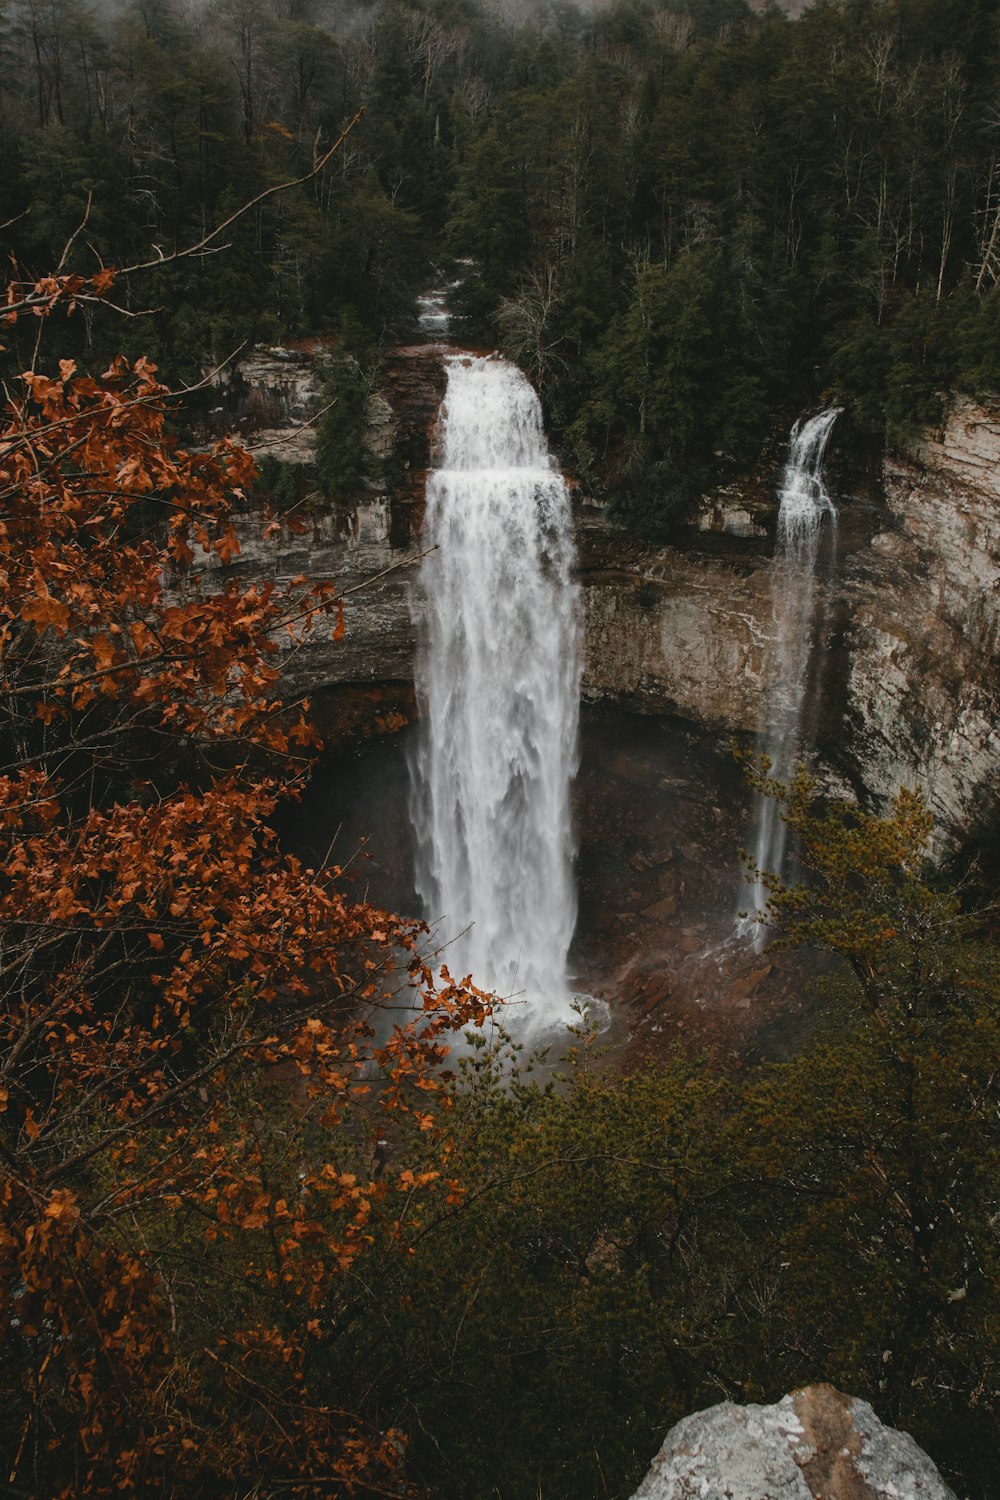 waterfalls flowing beside trees and rocks